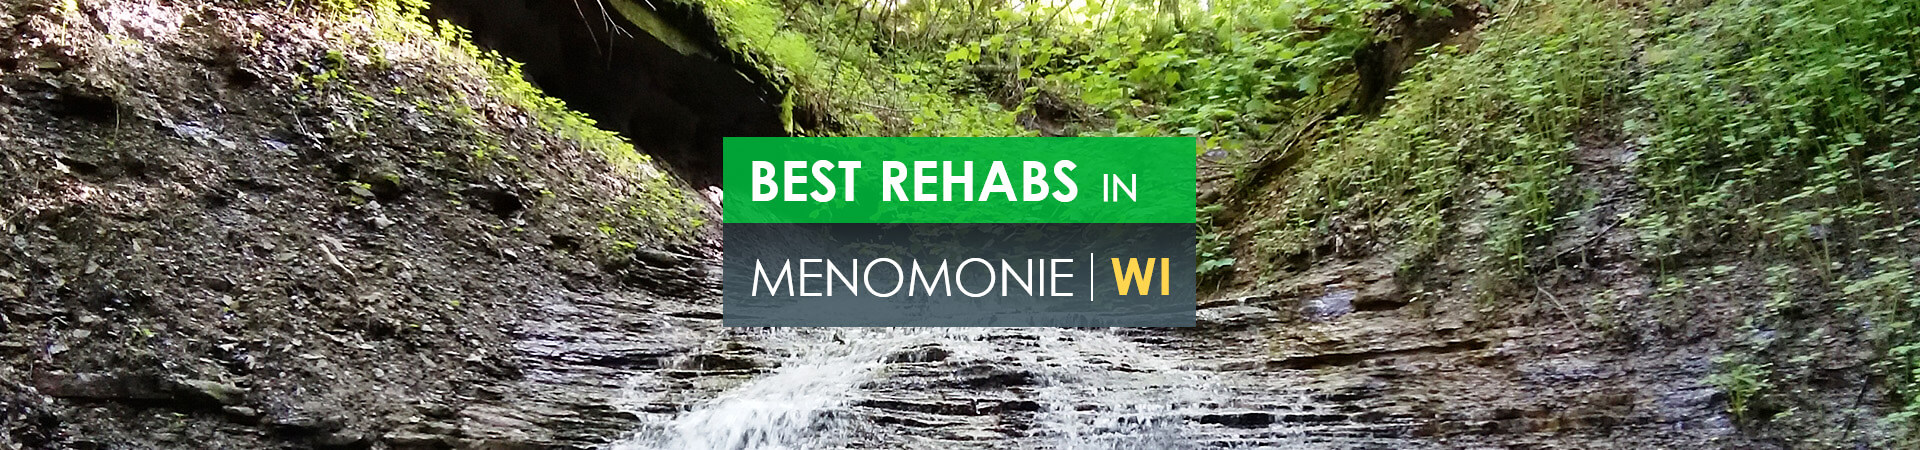 Best rehabs in Menomonie, WI